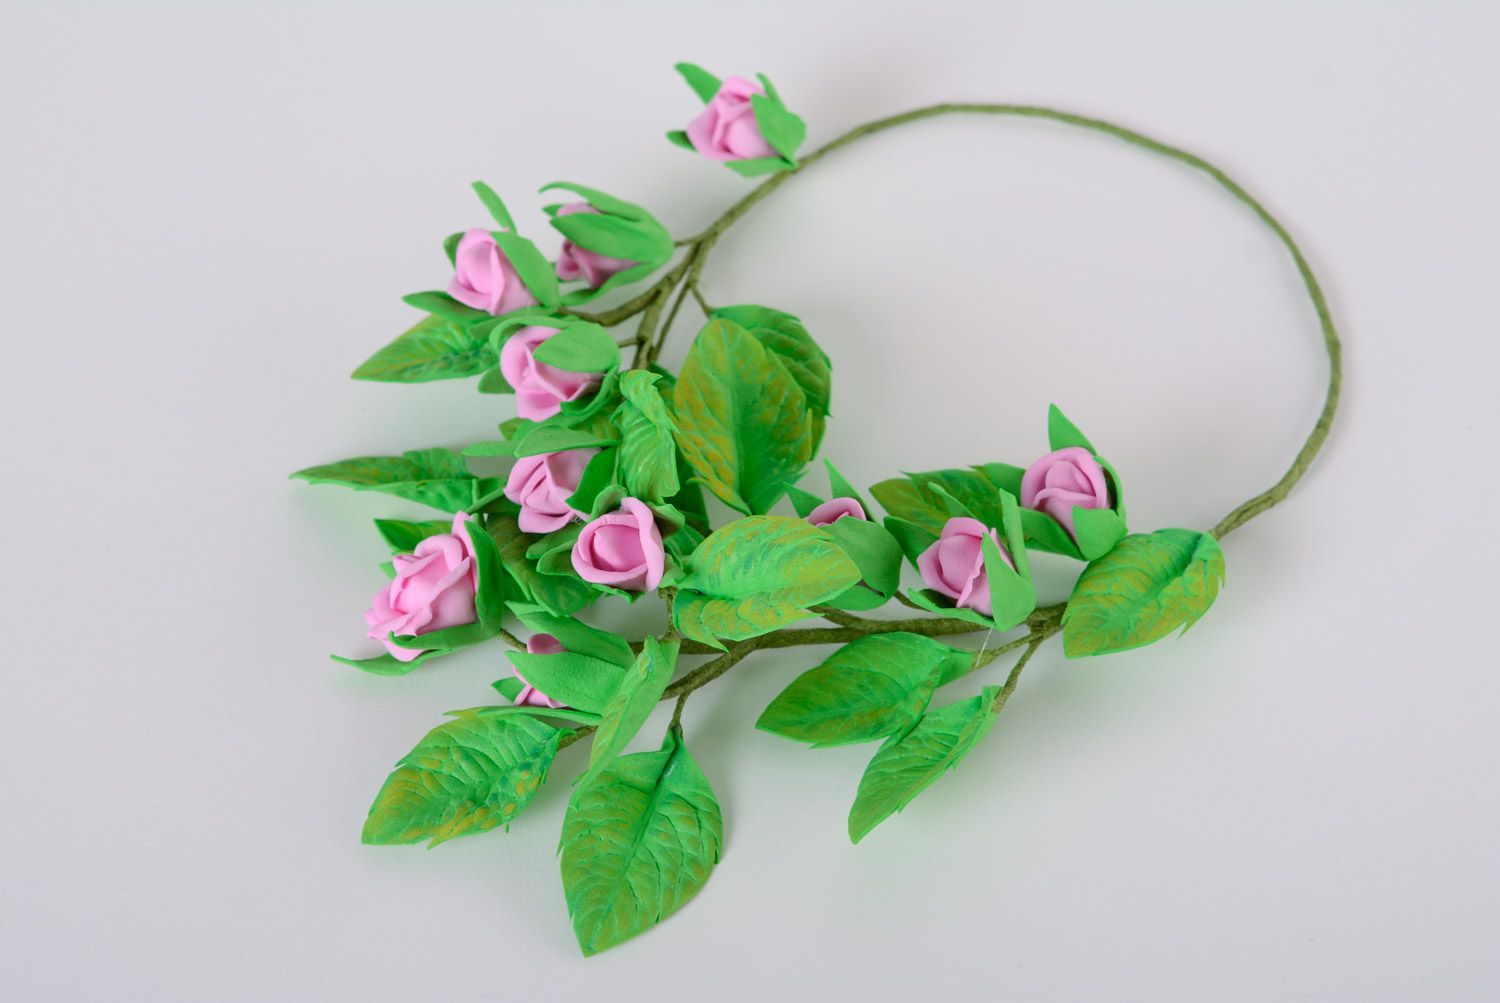 Колье из пластичной замши ручной работы цветочное зеленое с сиреневыми розами фото 4